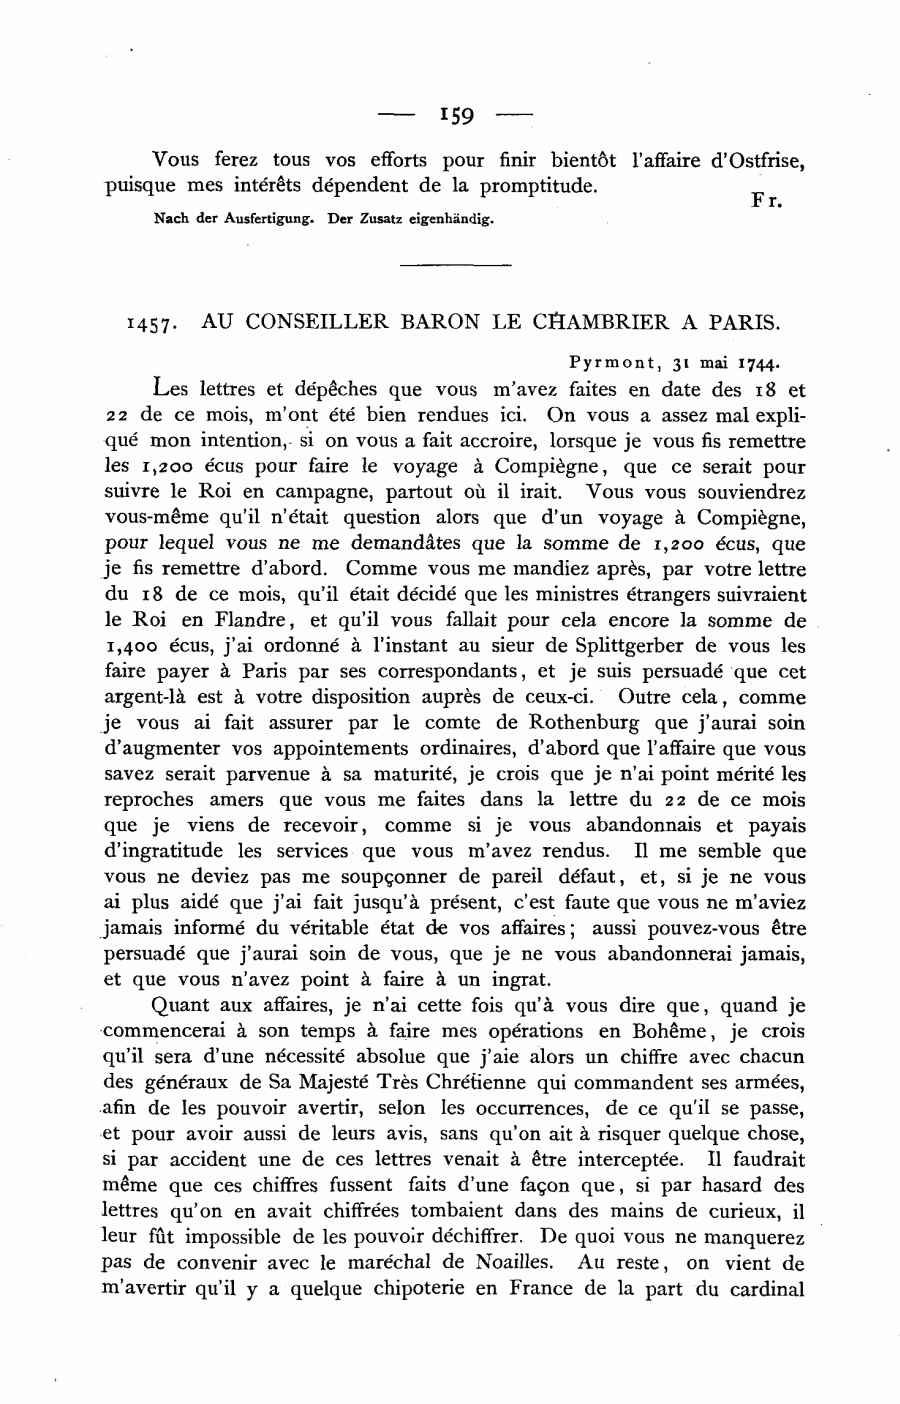 S. 159, Obj. 2